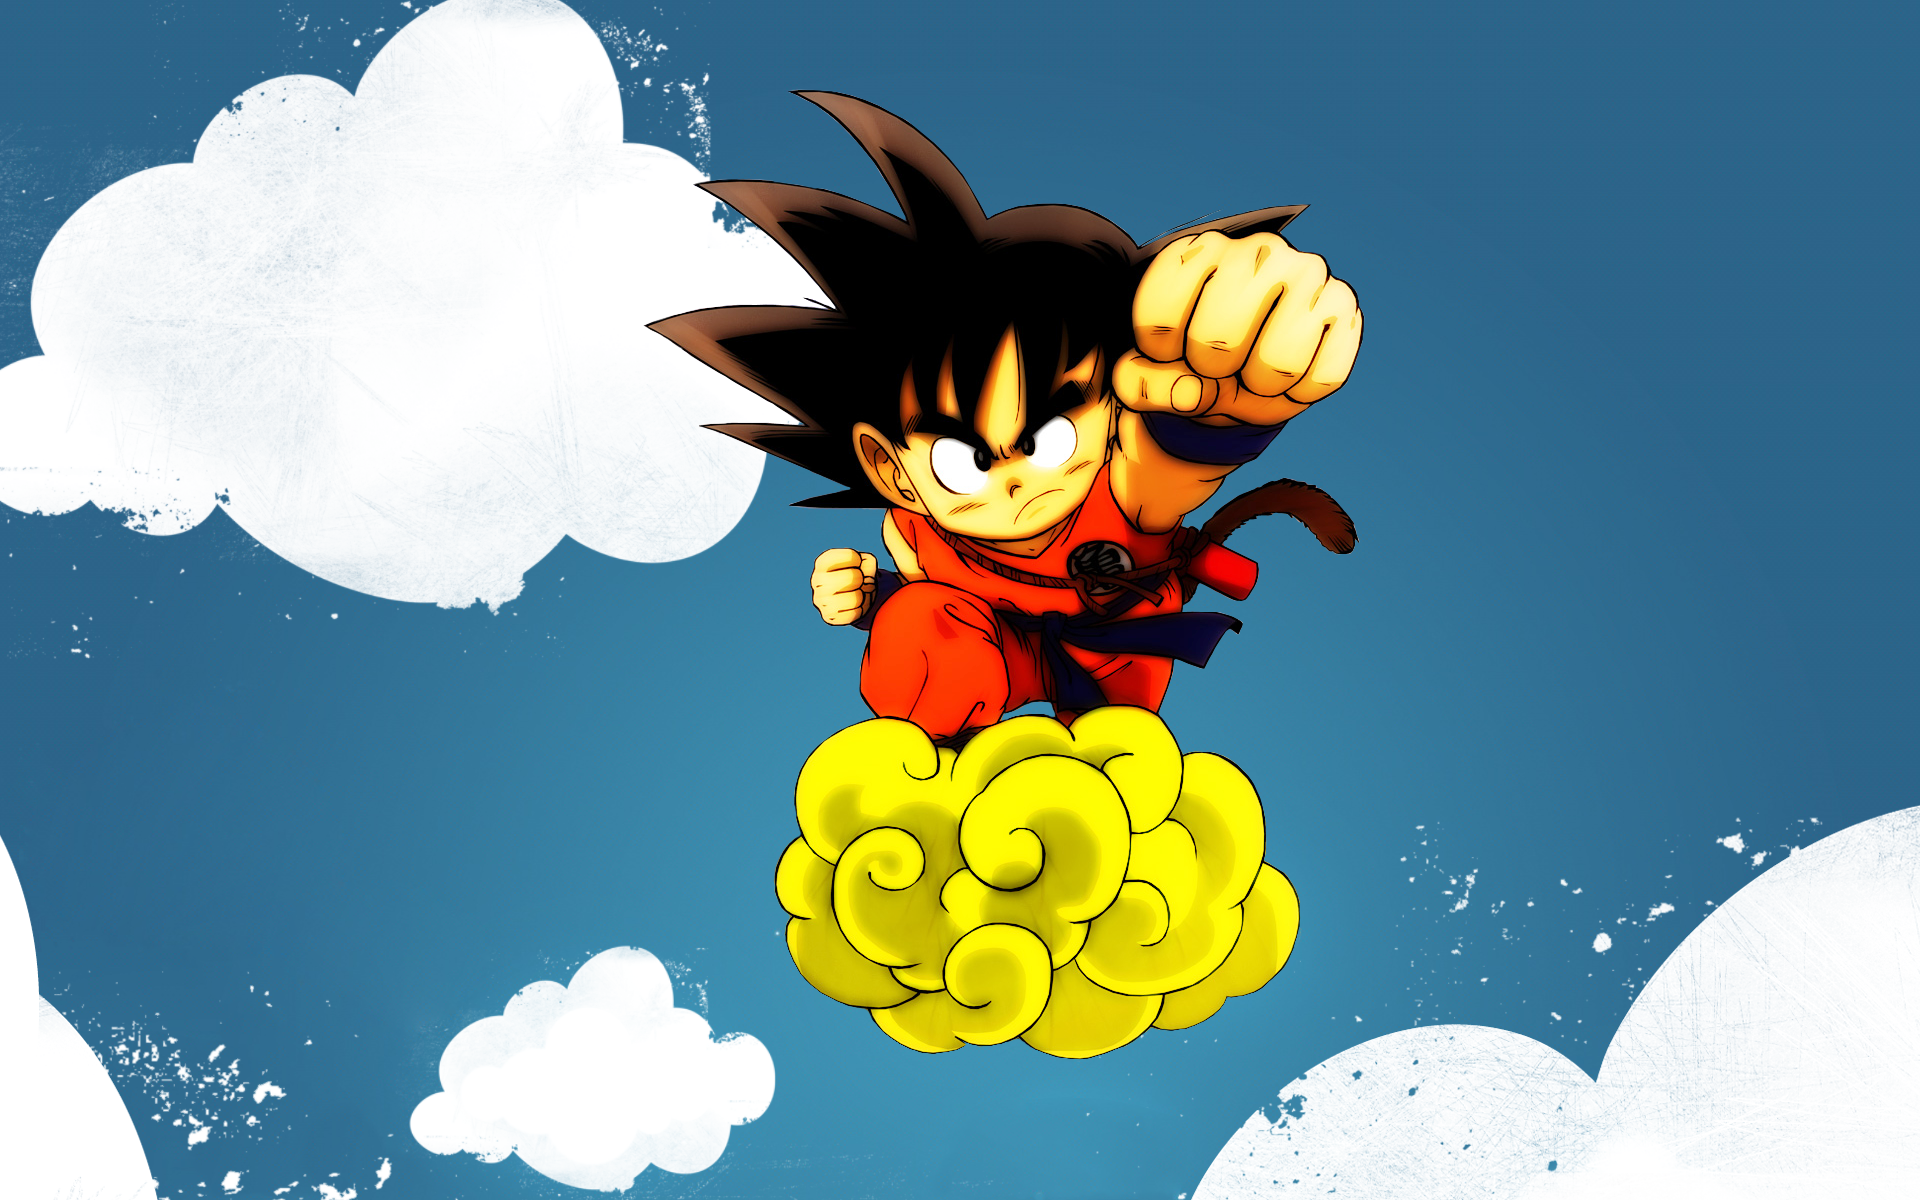 Thử tưởng tượng bạn có thể ngồi trên mây đi đến bất cứ đâu bạn muốn. Đây chính là khoảnh khắc của Goku trên Nimus Cloud. Thật tuyệt vời khi được theo chân anh hùng này trên chiếc đám mây kỳ diệu này. Đón xem để trải nghiệm cảm giác tuyệt vời này!